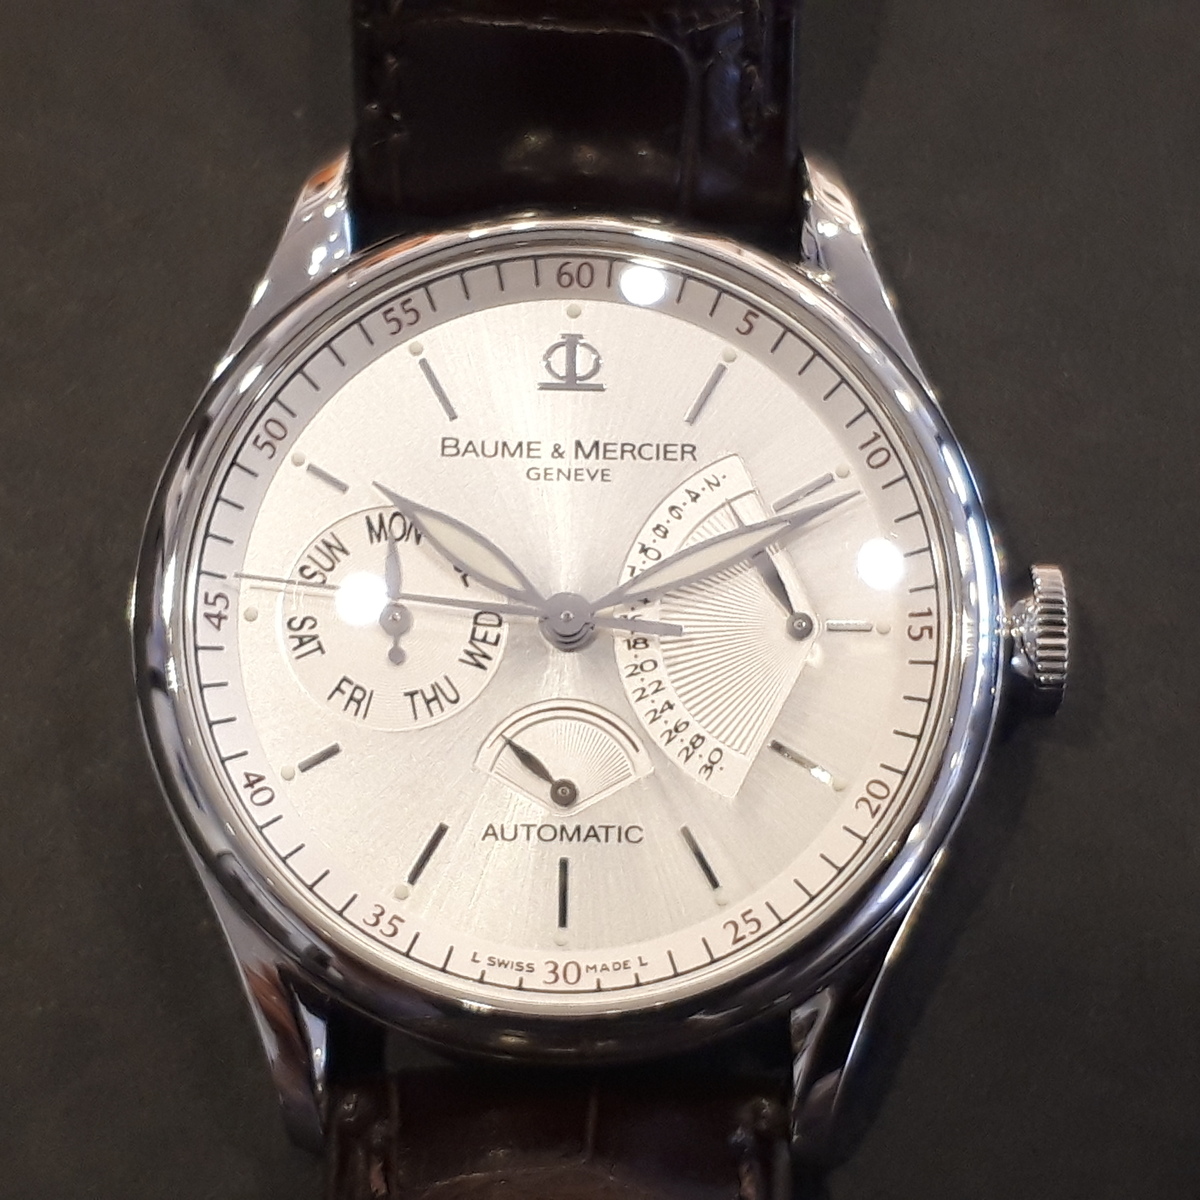 ボーム&メルシエのMOA08736 クラシマ エグゼクティブ ウィリアム 1830本限定 自動巻き時計の買取実績です。